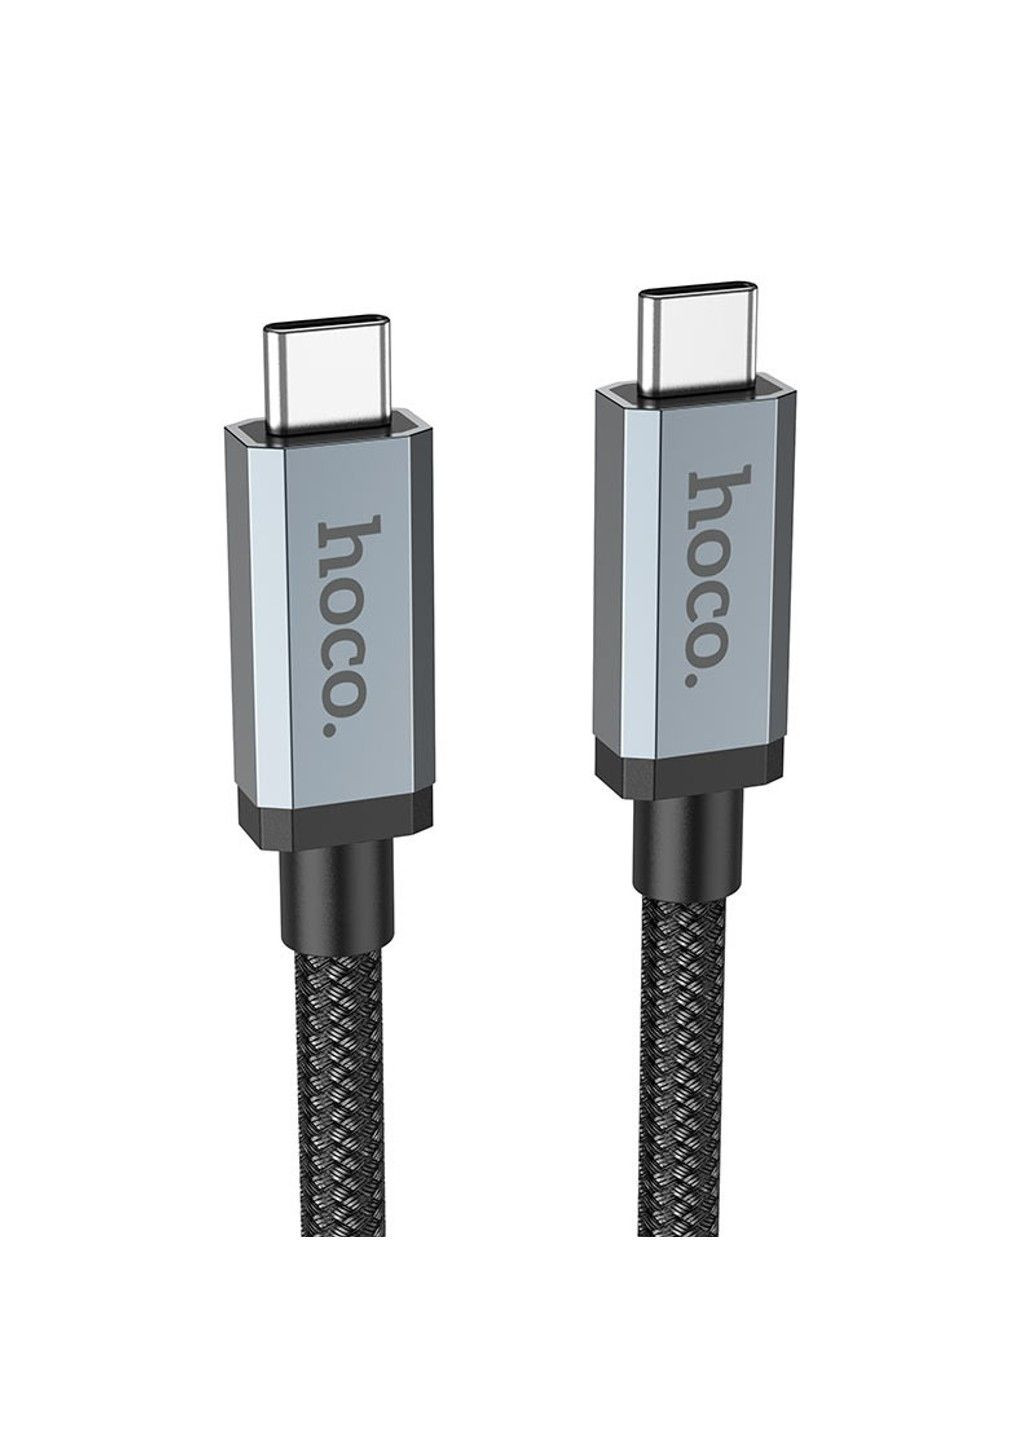 Дата кабель US06 Type-C to Type-C 100W USB3.2 20Gbps (2m) Hoco (291880889)